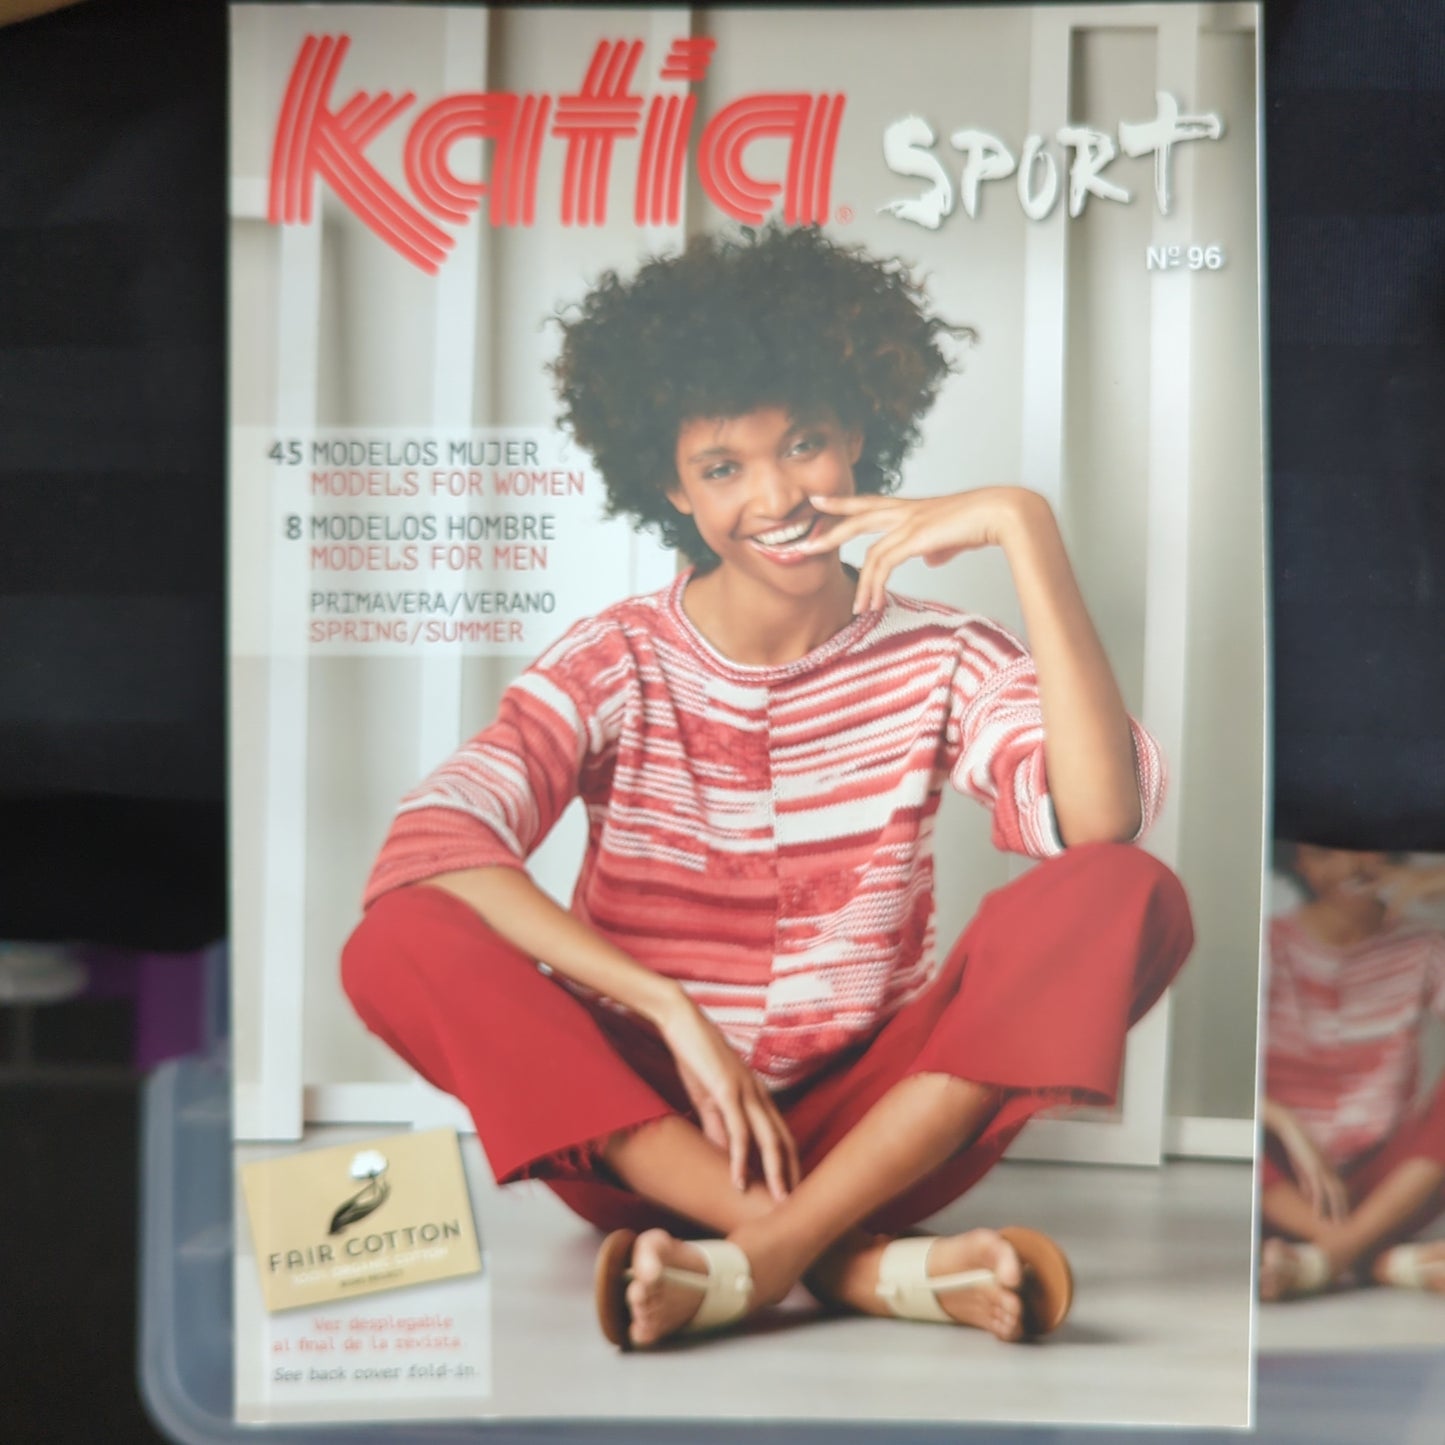 Katia No. 96 Sport